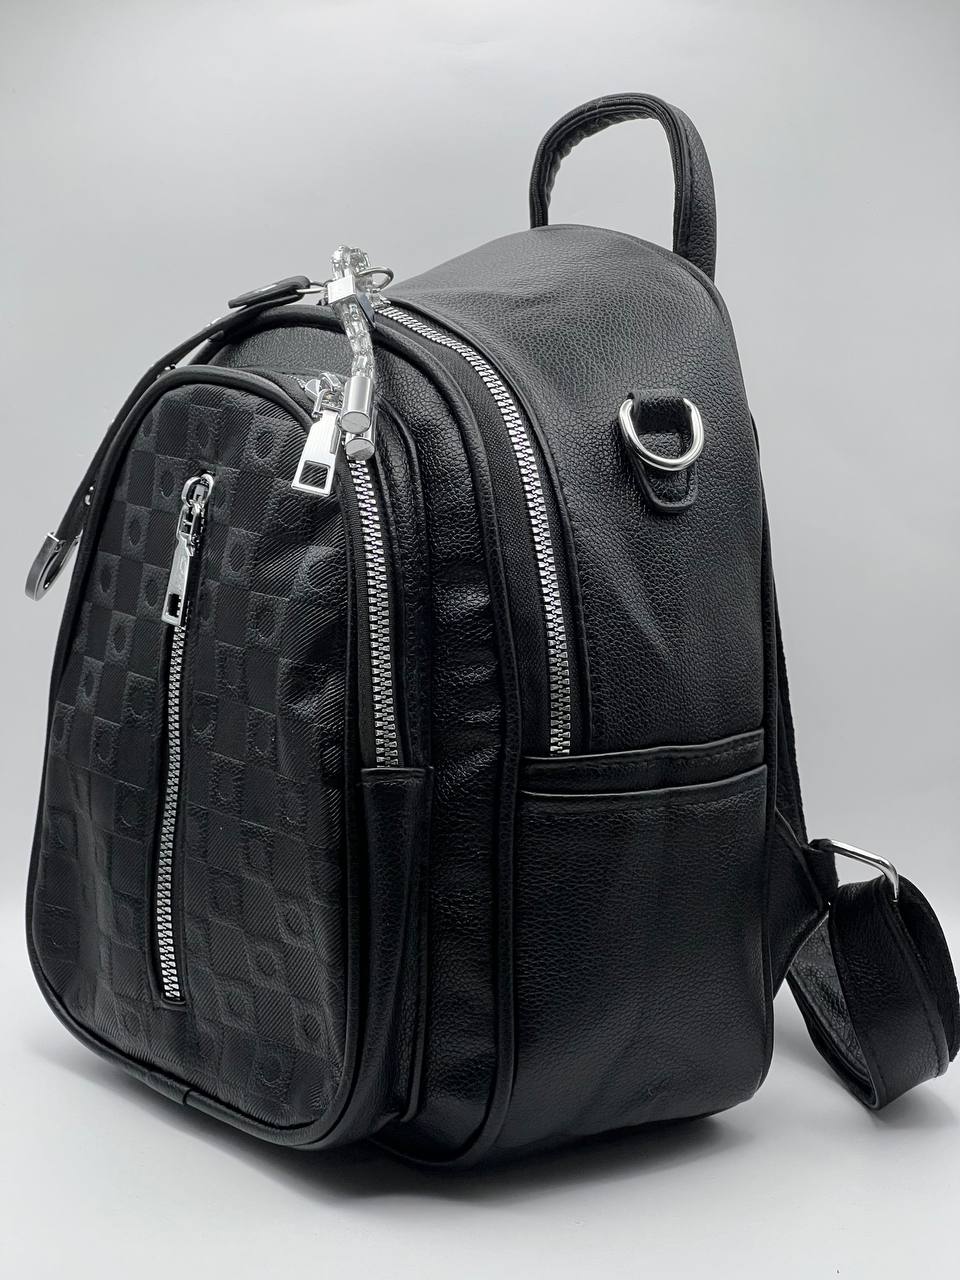 Сумка-рюкзак женская SunGold Р-92010 черная, 27х22х12 см